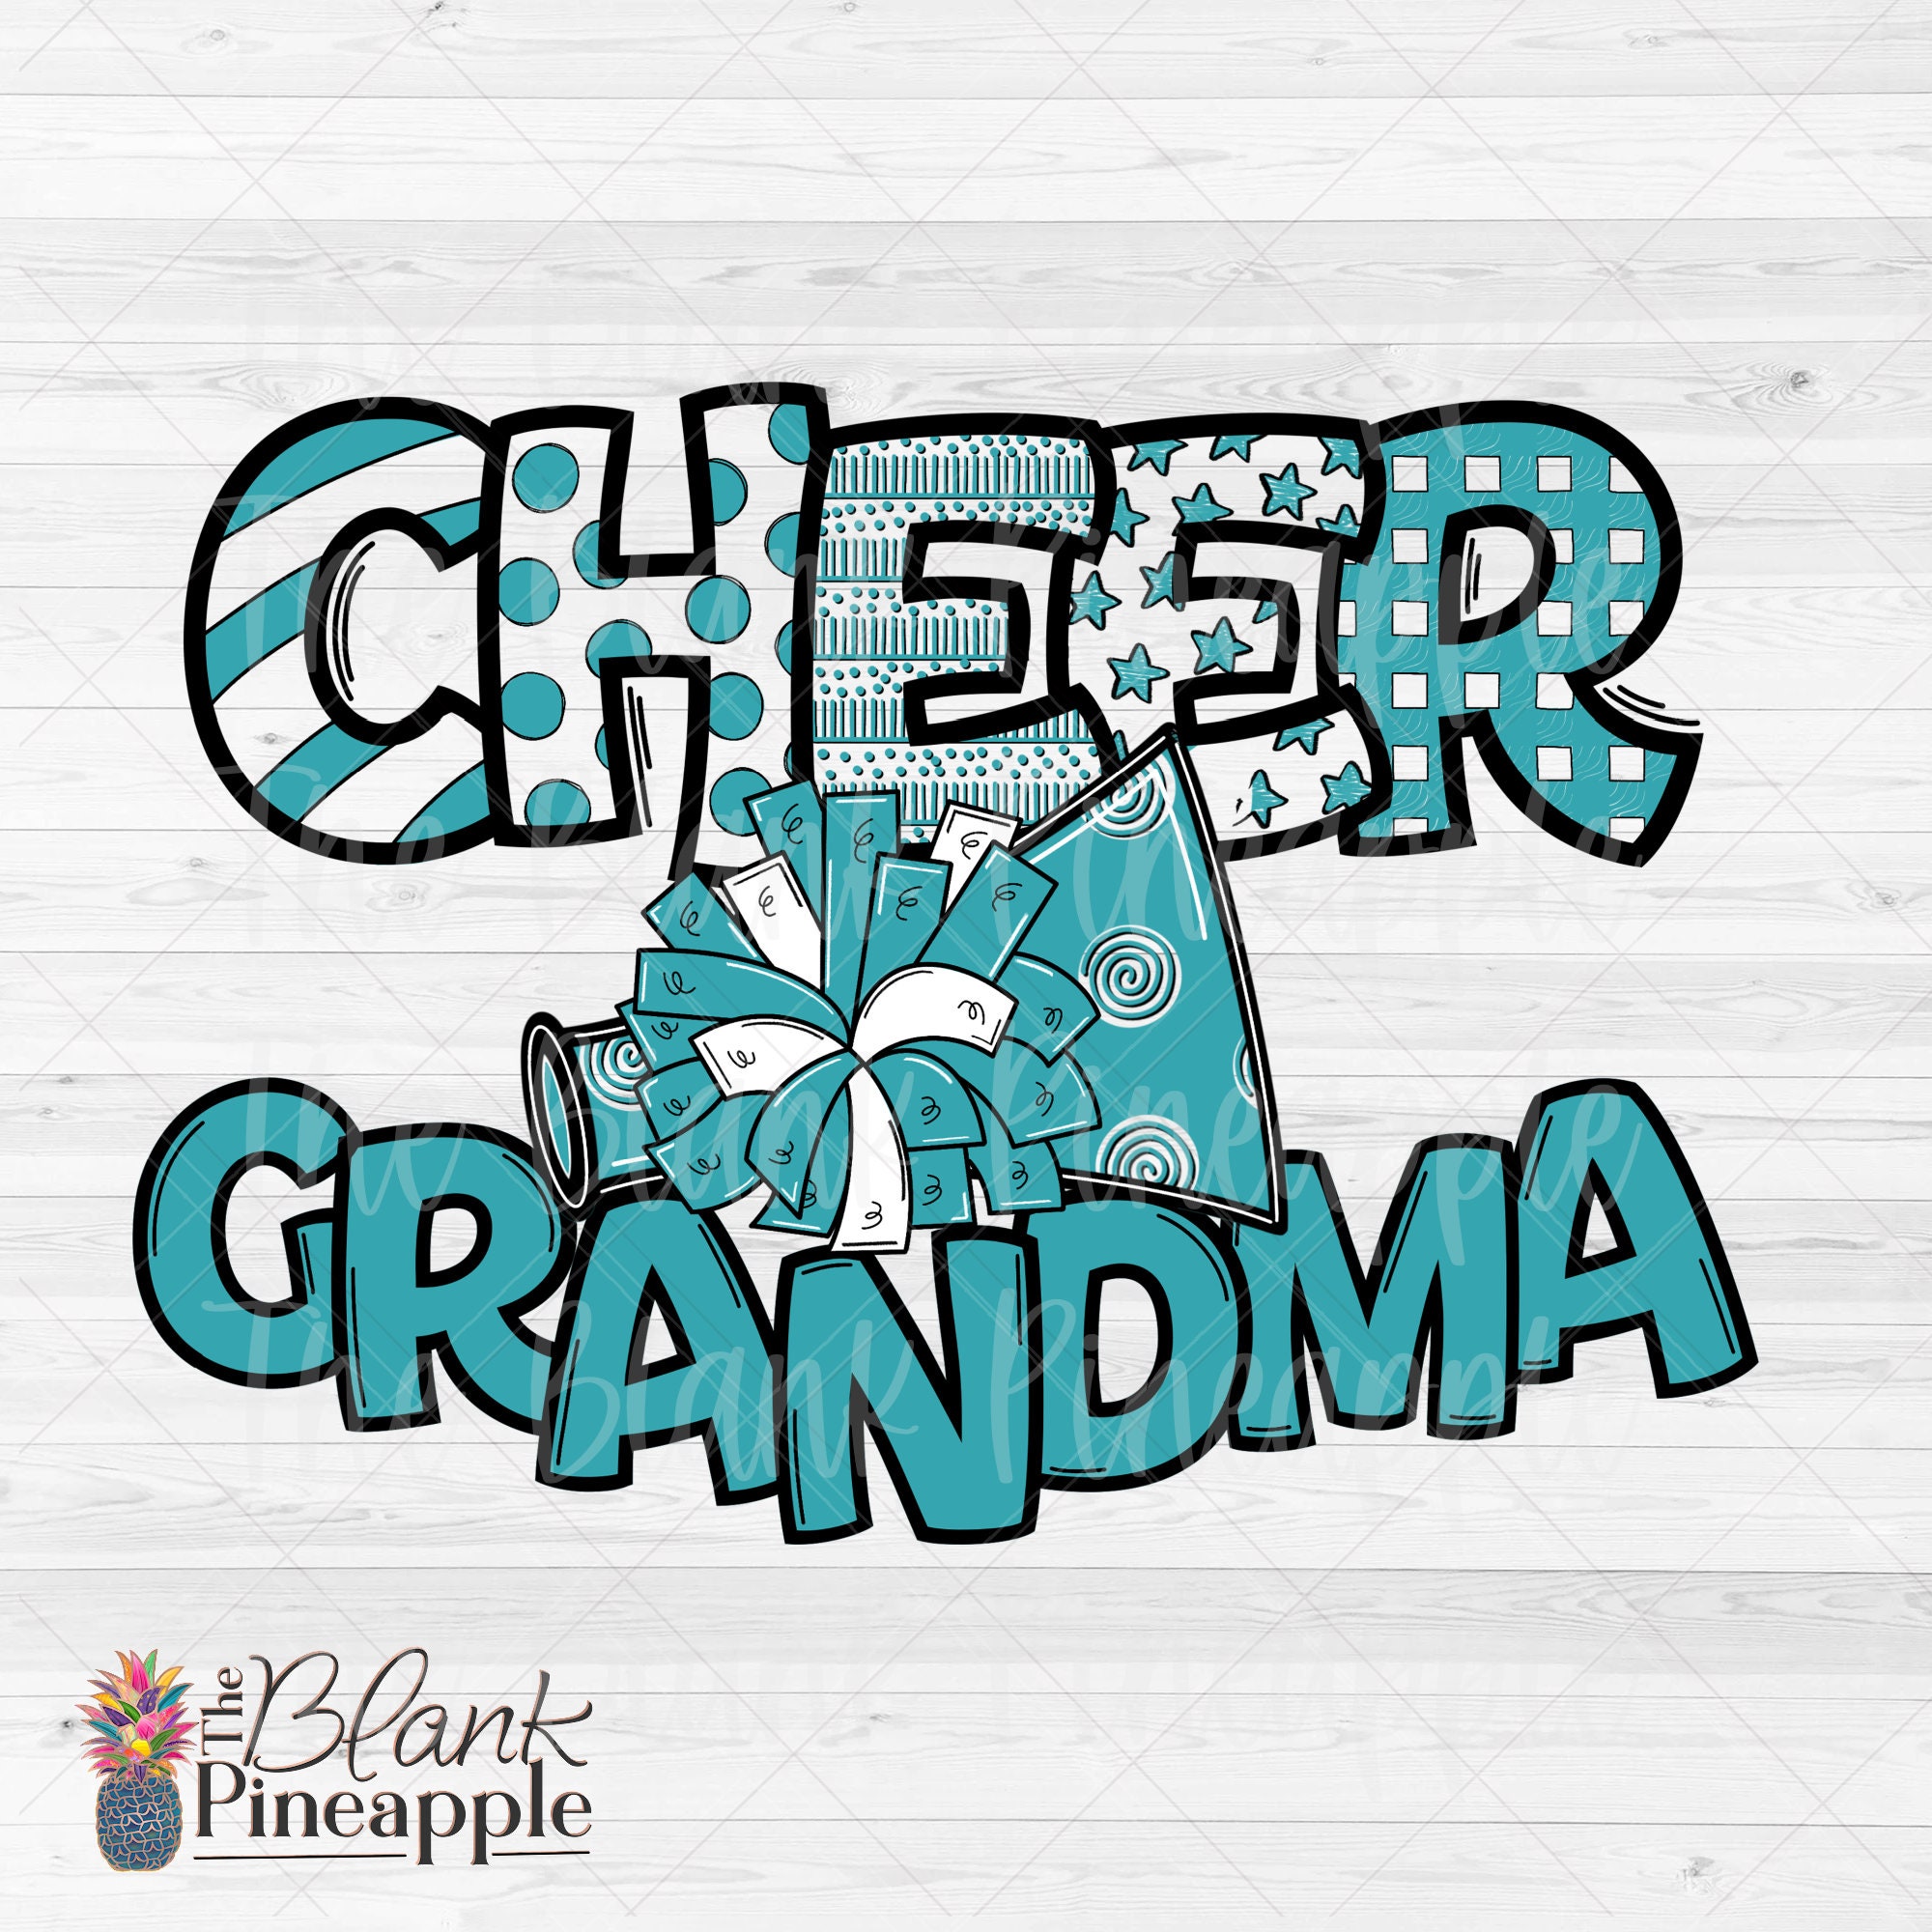 Cheer Grandma Mini Backpack Bow